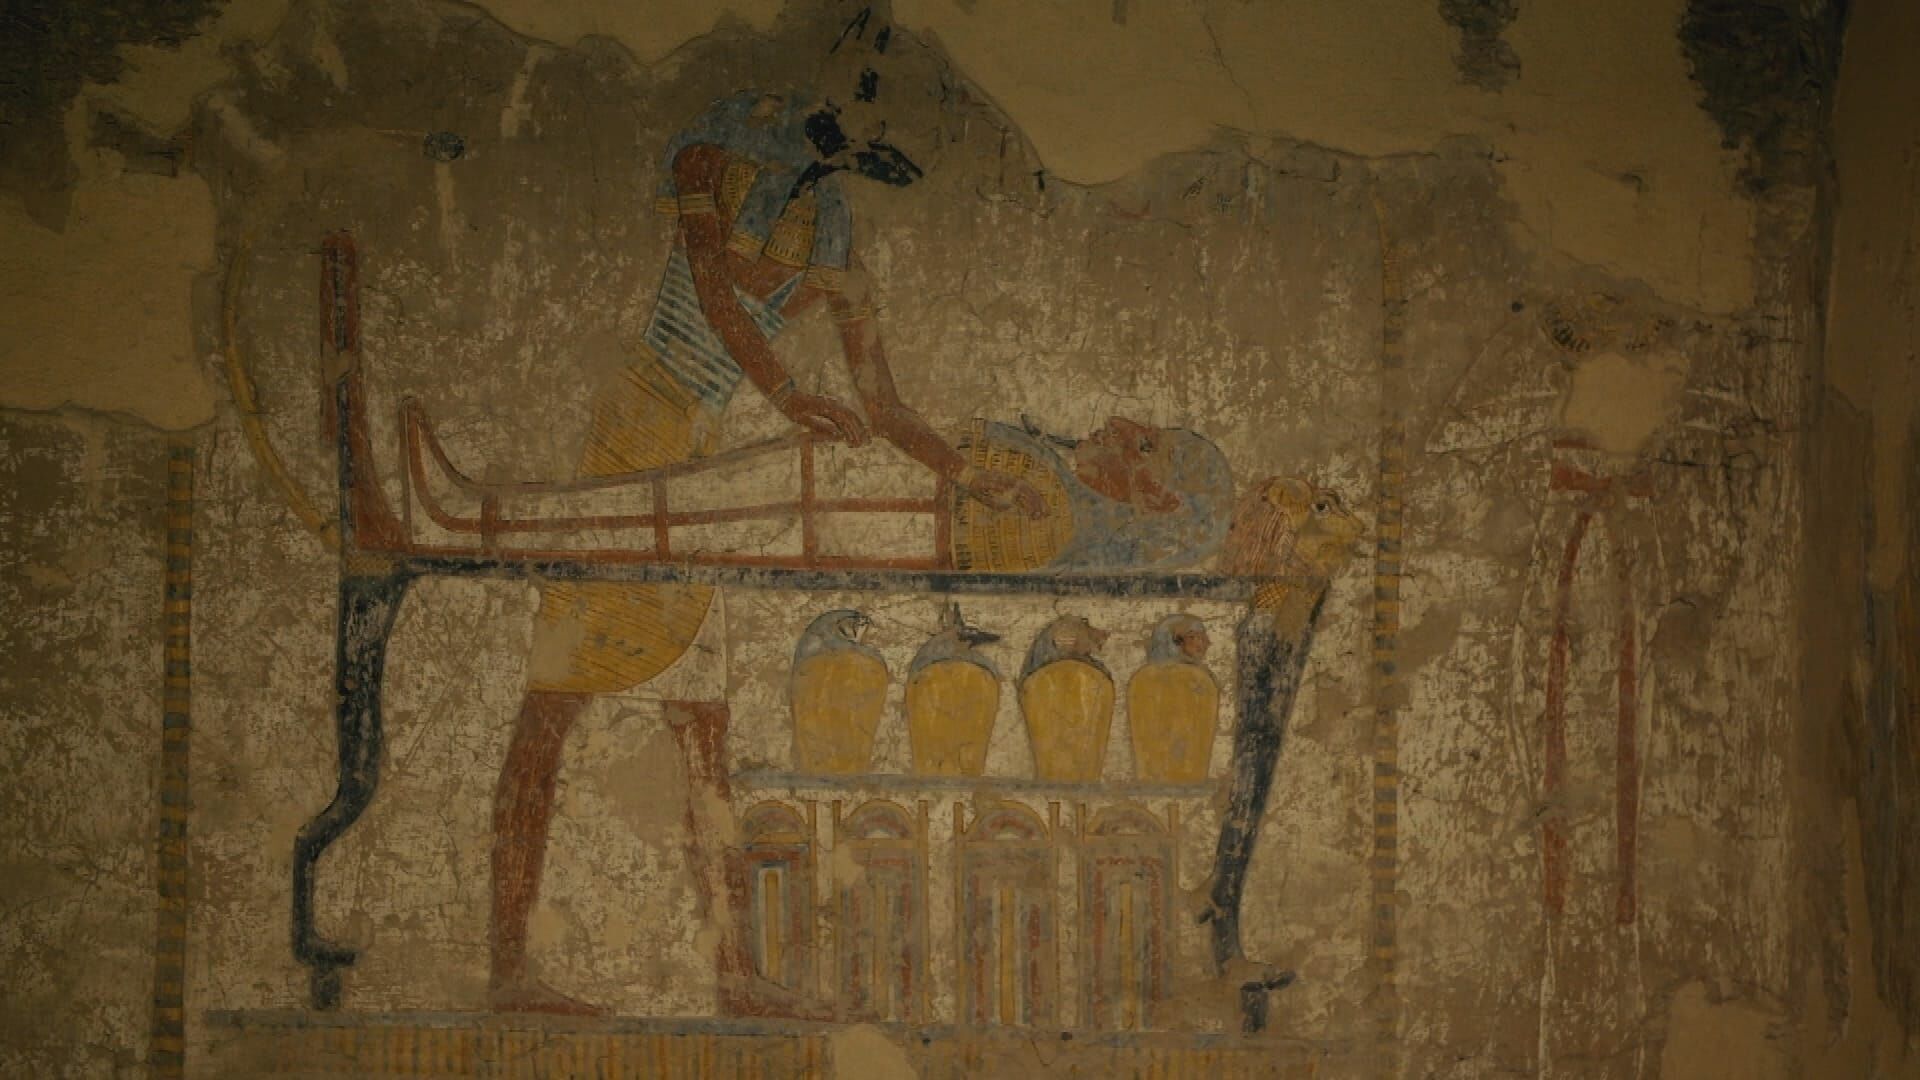 Ägypten – Schatzkammer der Archäologie